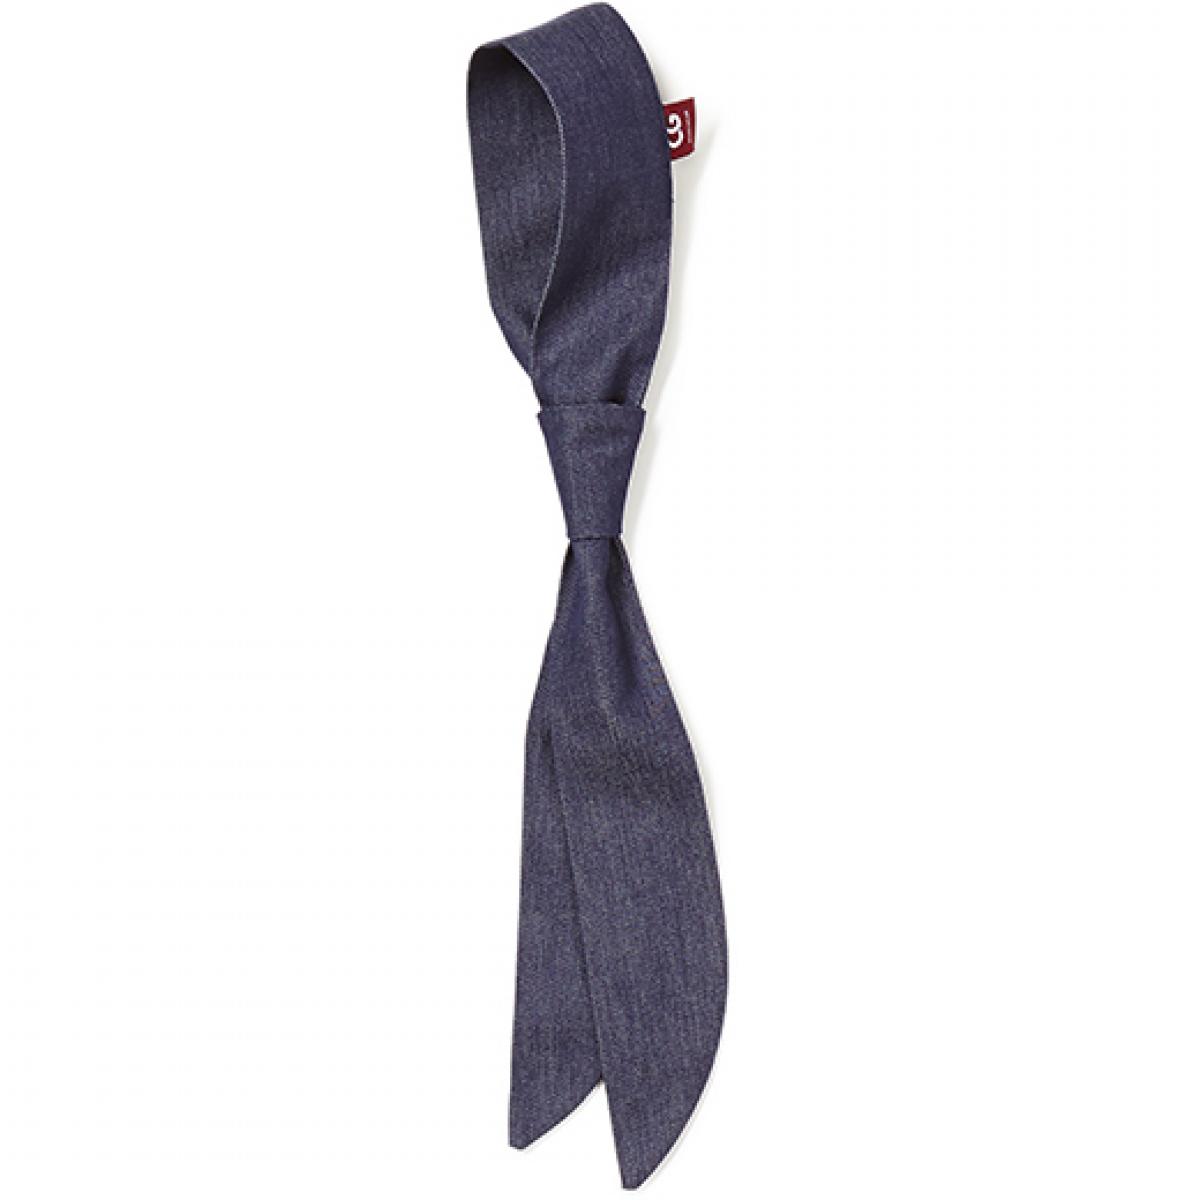 Hersteller: CG Workwear Herstellernummer: 04150-32 Artikelbezeichnung: Krawatte Atri, Mit Durchziehschlaufe (ohne Binden) Farbe: Denim